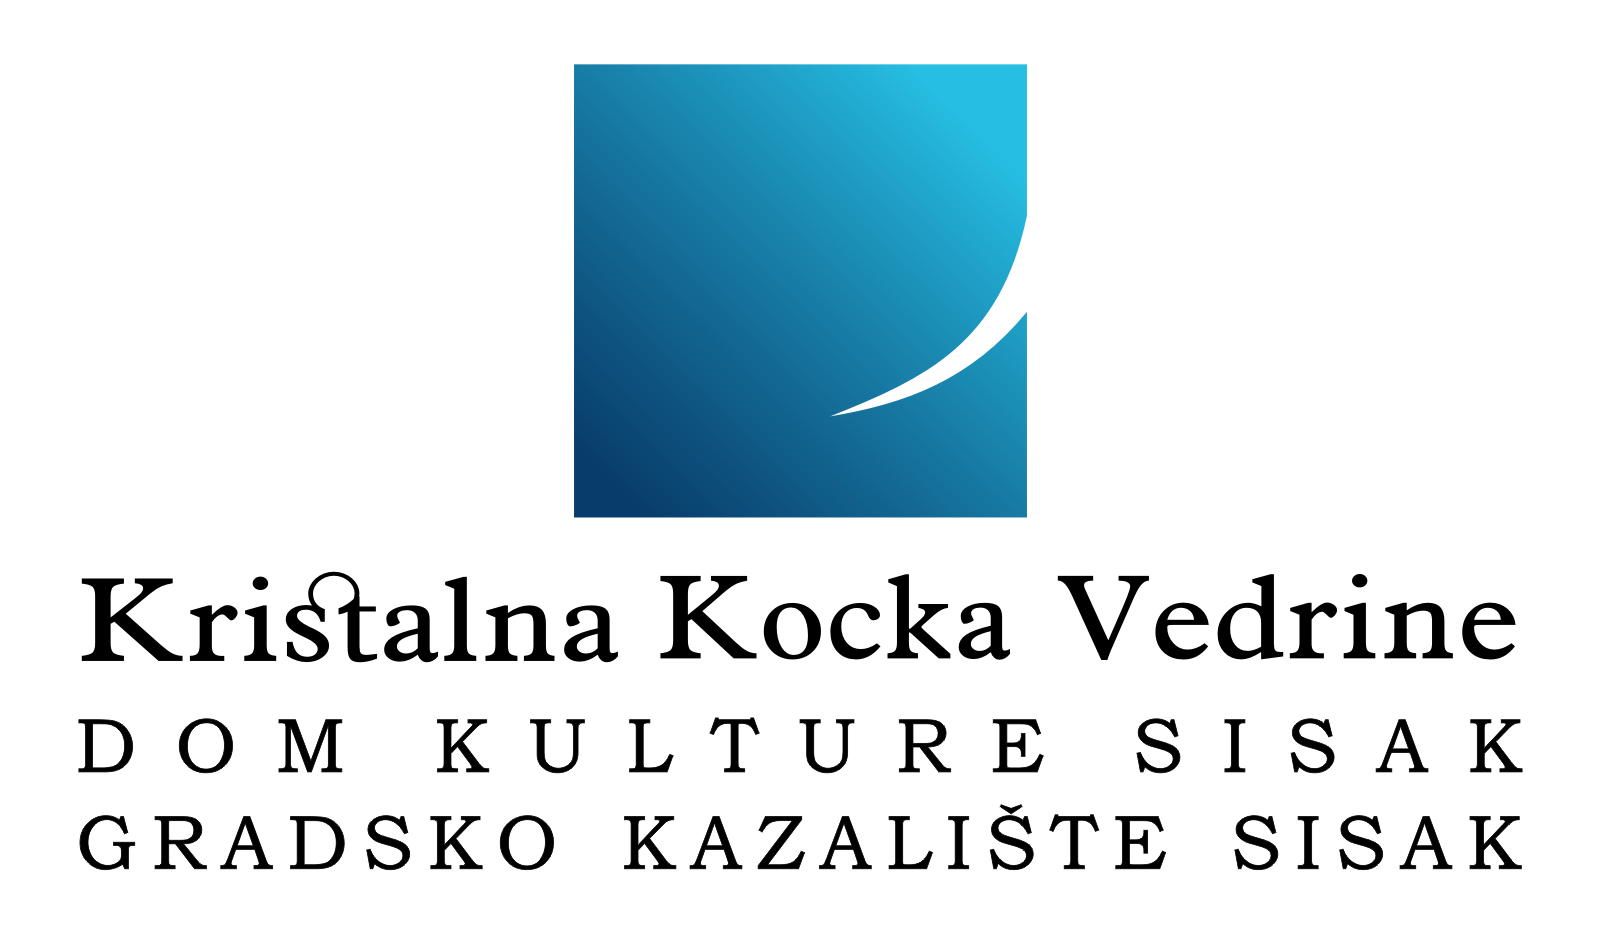 You are currently viewing Poštovani korisnici usluga Doma kulture Kristalna kocka vedrine Sisak!